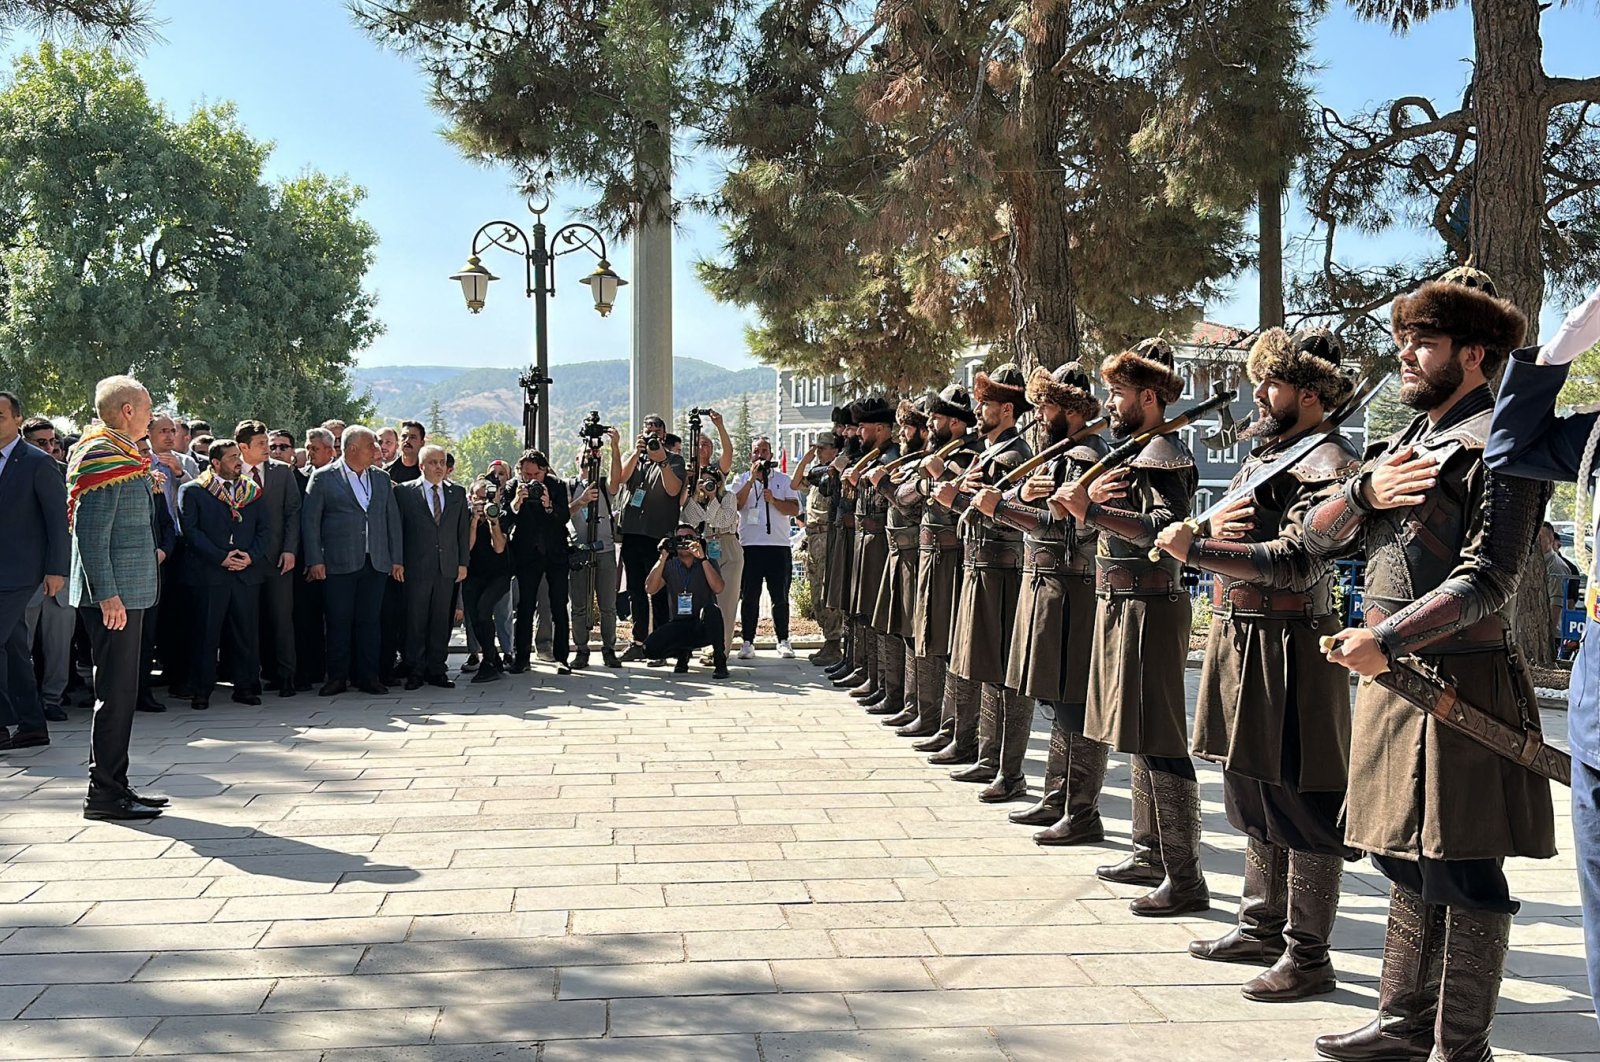 Ertuğrul Ghazi commemorated at ceremony in Türkiye’s Bilecik